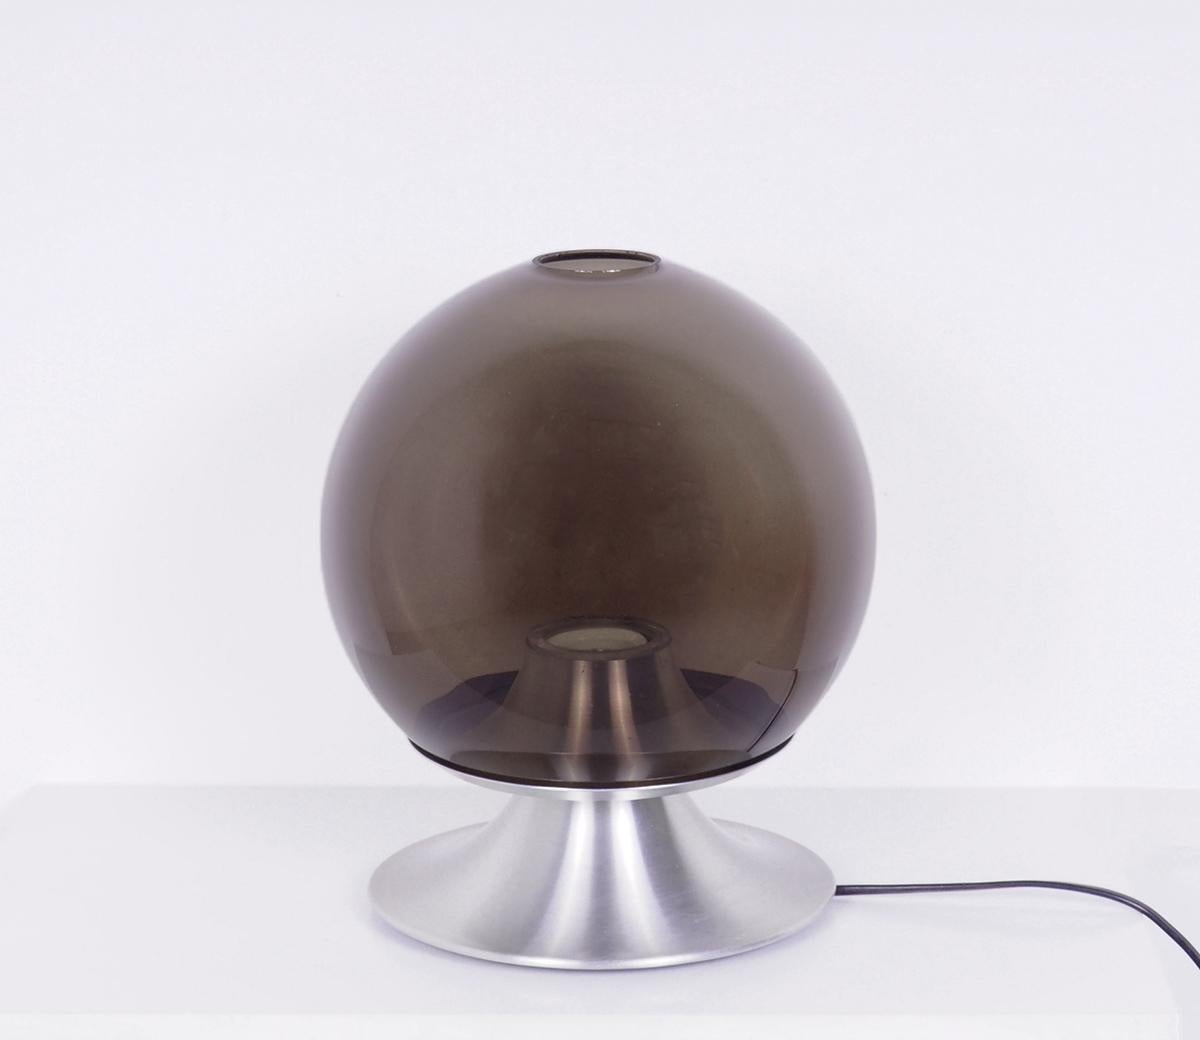 Magnifique lampe de table emblématique produite par Icone Amsterdam.

Modèle D-2001 Dream Island conçu par Frank Ligtelijn dans les années 1960.

La lampe a un abat-jour rond en verre fumé brun-gris qui repose sur une base en aluminium.

Lampe très